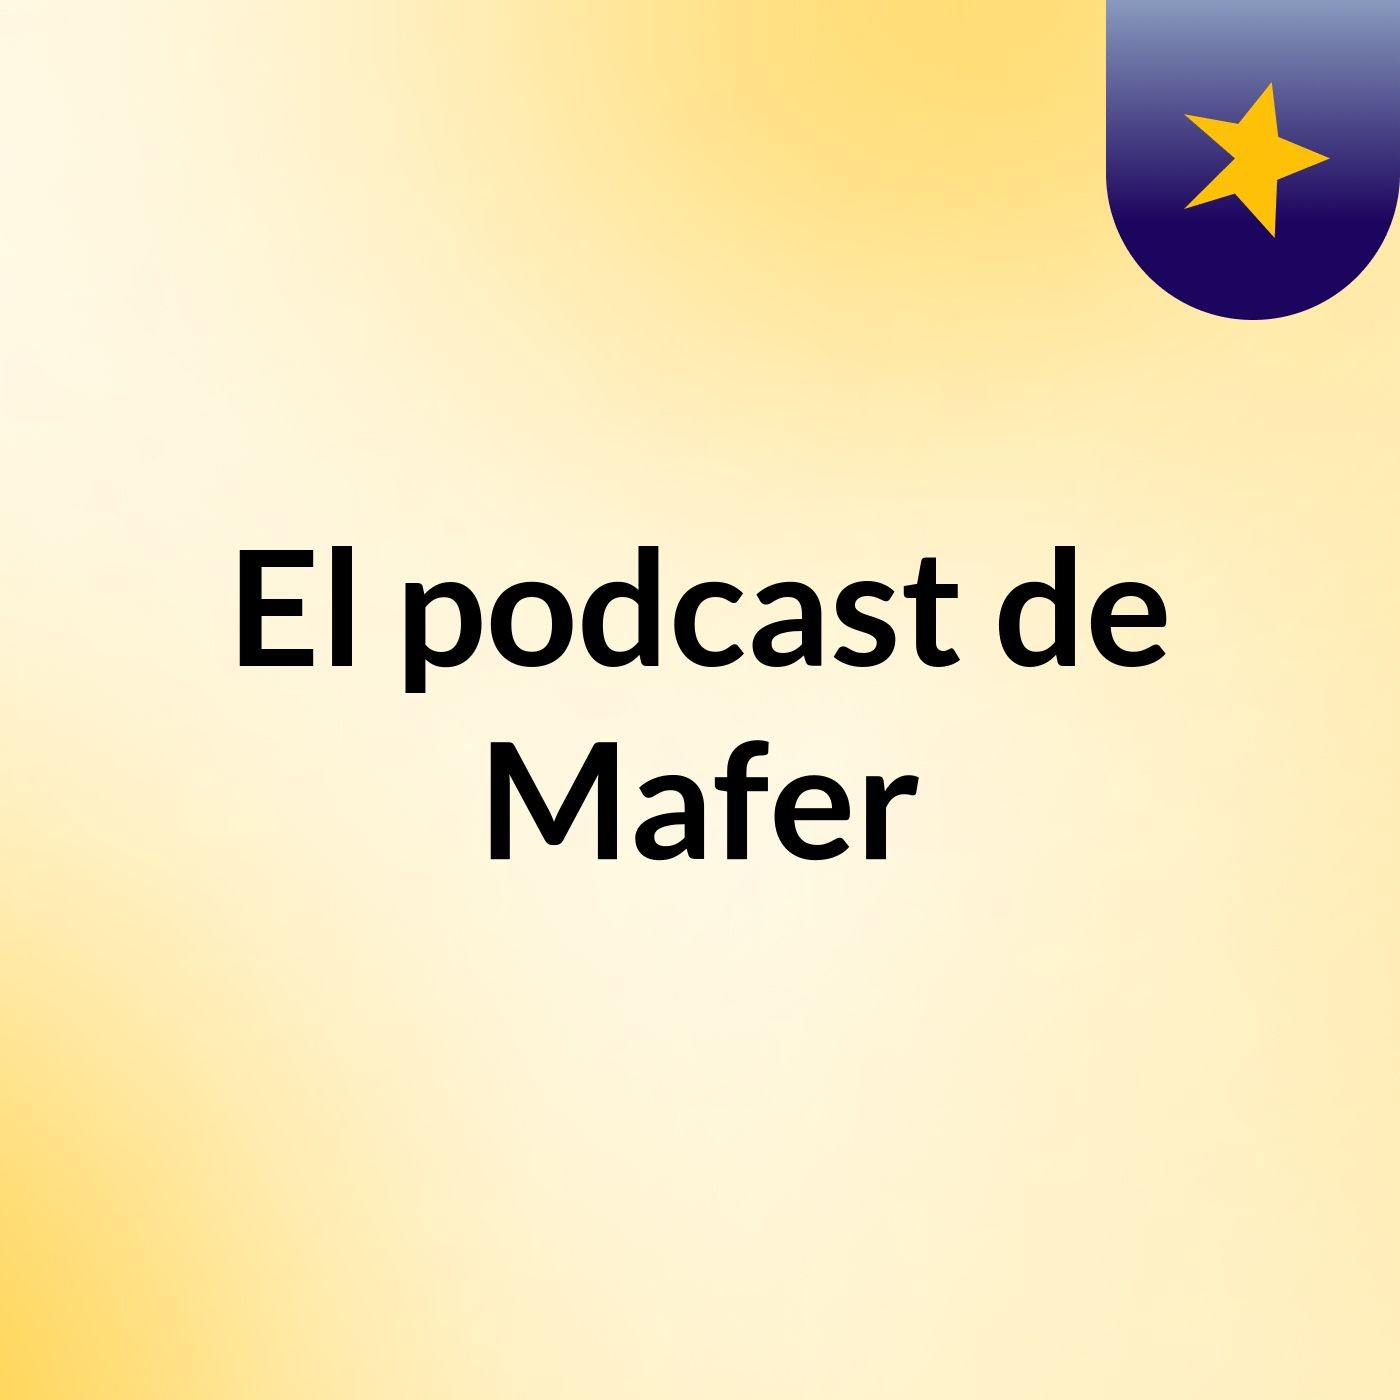 El podcast de Mafer